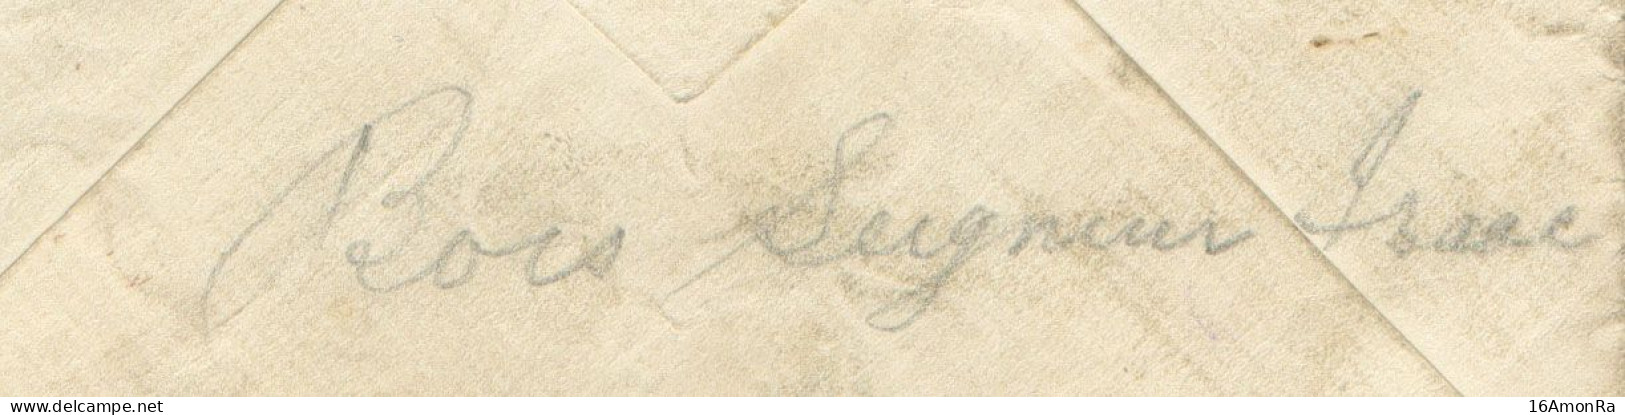 Enveloppe écrite Par Un Belge De Bois-Seigneur-Isaac (près Lillois Et Waterloo) Pour Compte D'un Prisonnier Britannique - Belgisch Leger